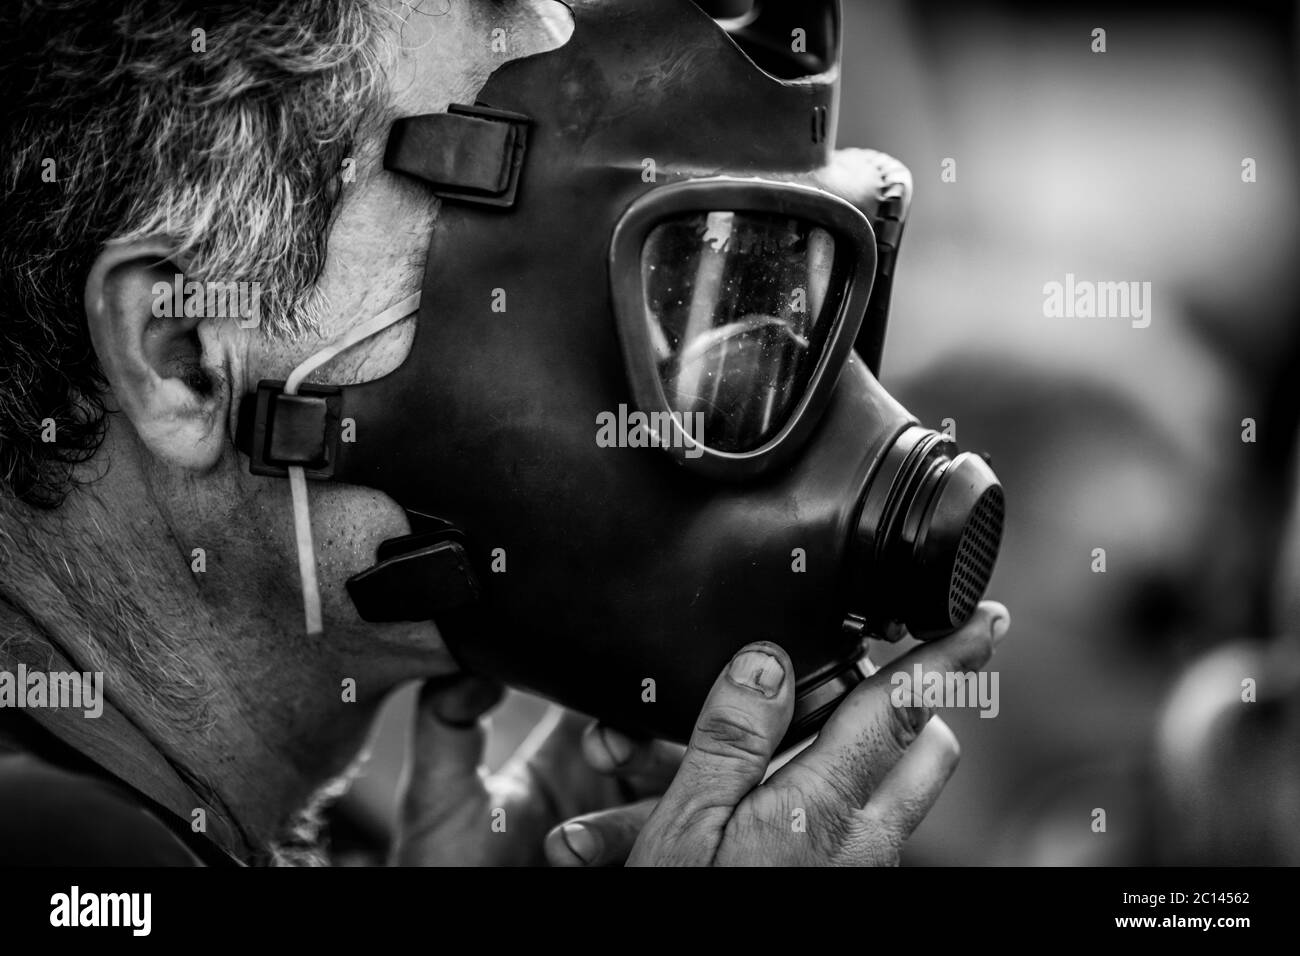 Dettagli con un uomo che mette sul suo volto una vecchia maschera a gas militare vintage - in bianco e nero. Foto Stock